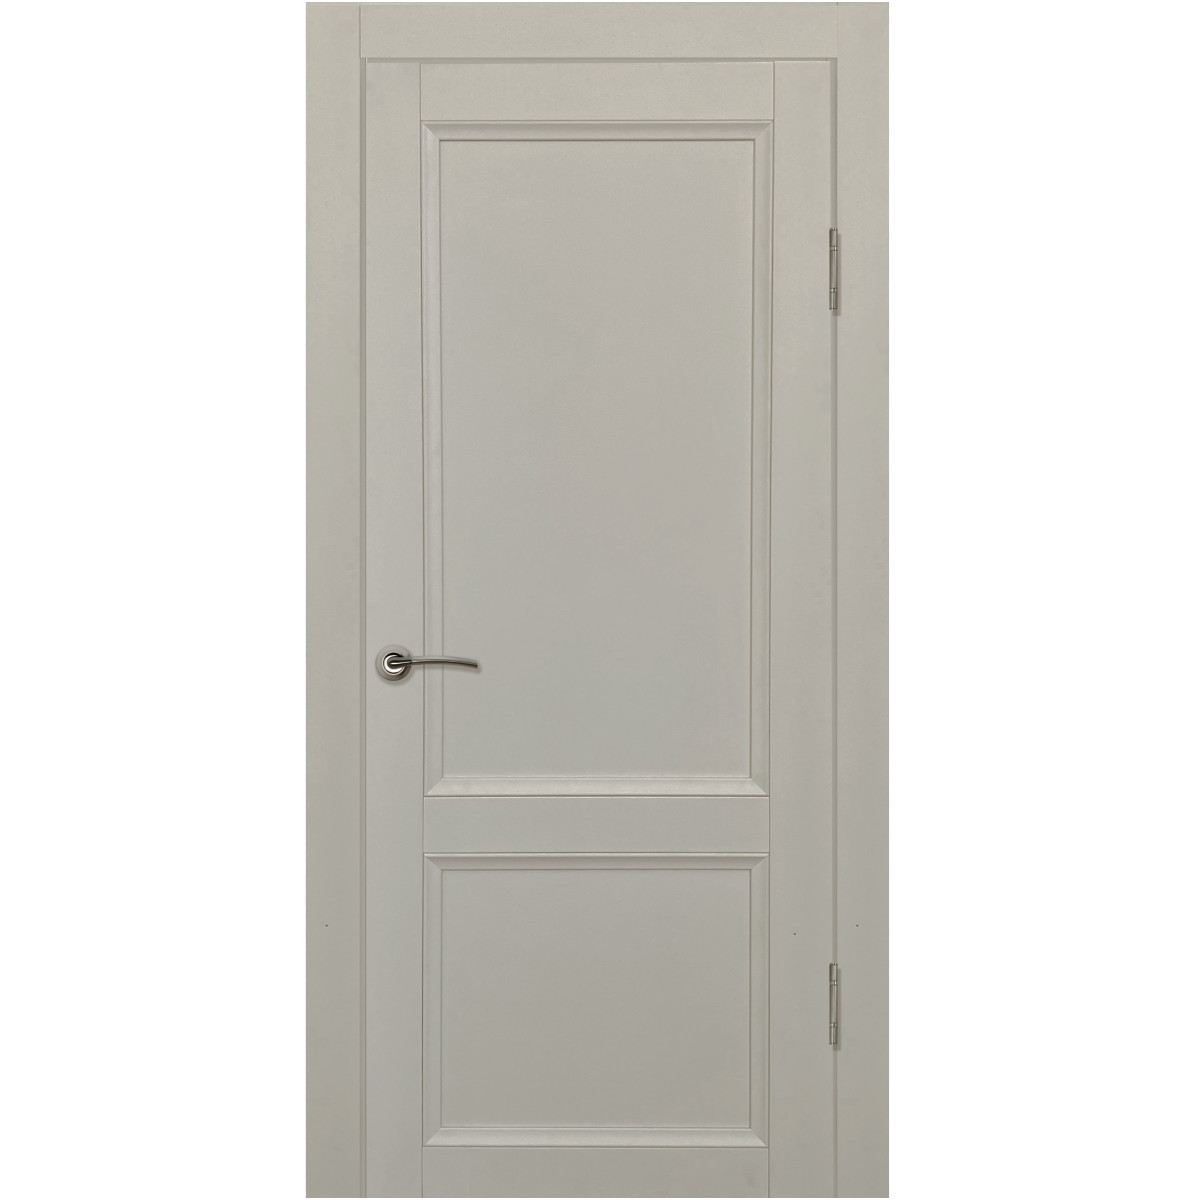 Дверь межкомнатная глухая с замком и петлями в комплекте Рондо 70x200 см Hardflex цвет серый жемчуг